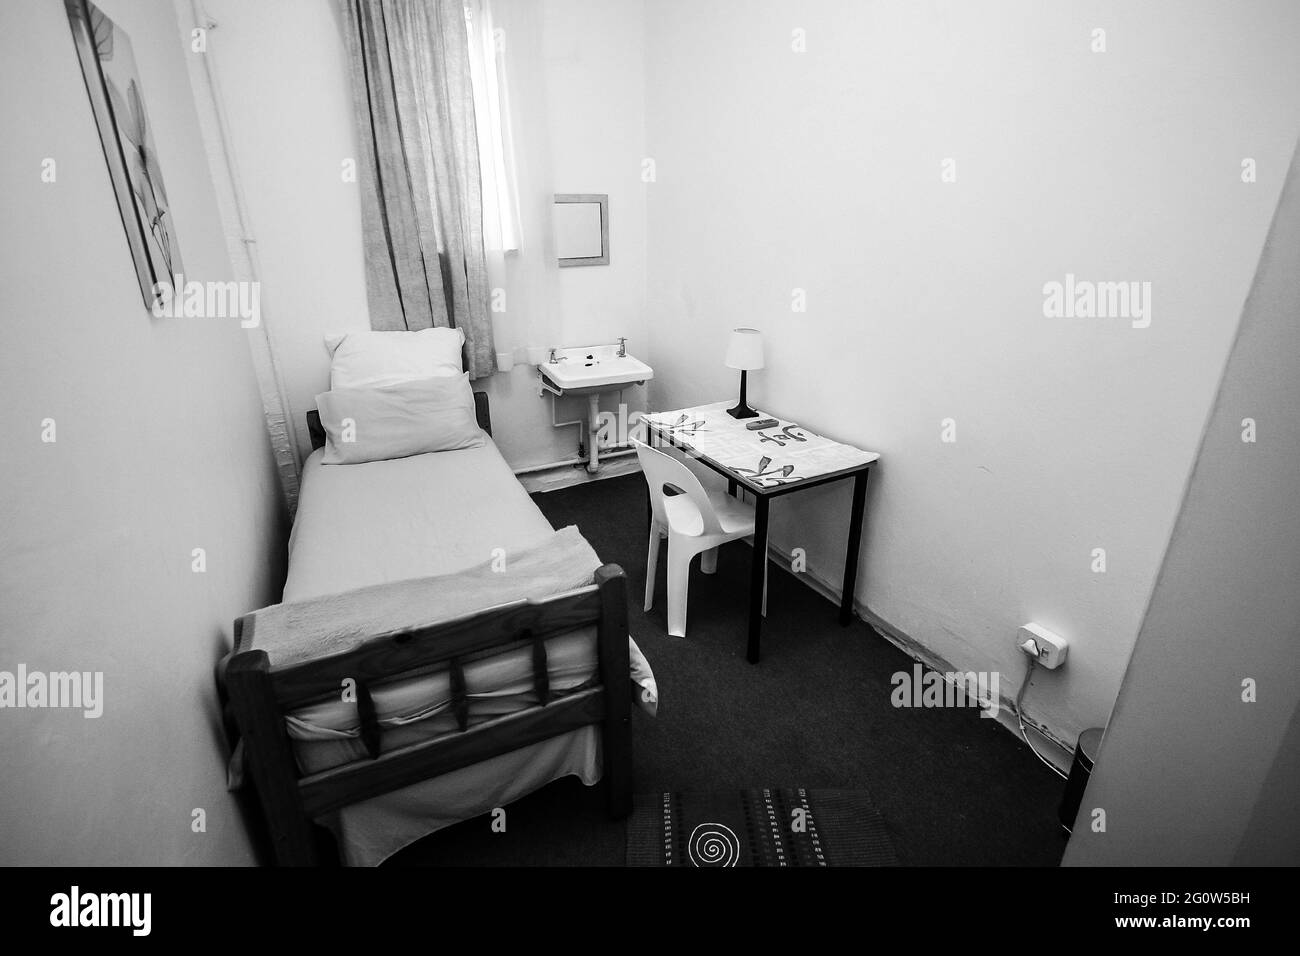 JOHANNESBURG, SÜDAFRIKA - Jan 05, 2021: Johannesburg, Südafrika - November 9, 2009: Kleines Schlafzimmer in Budget Hostel Urlaub Unterkunft Stockfoto